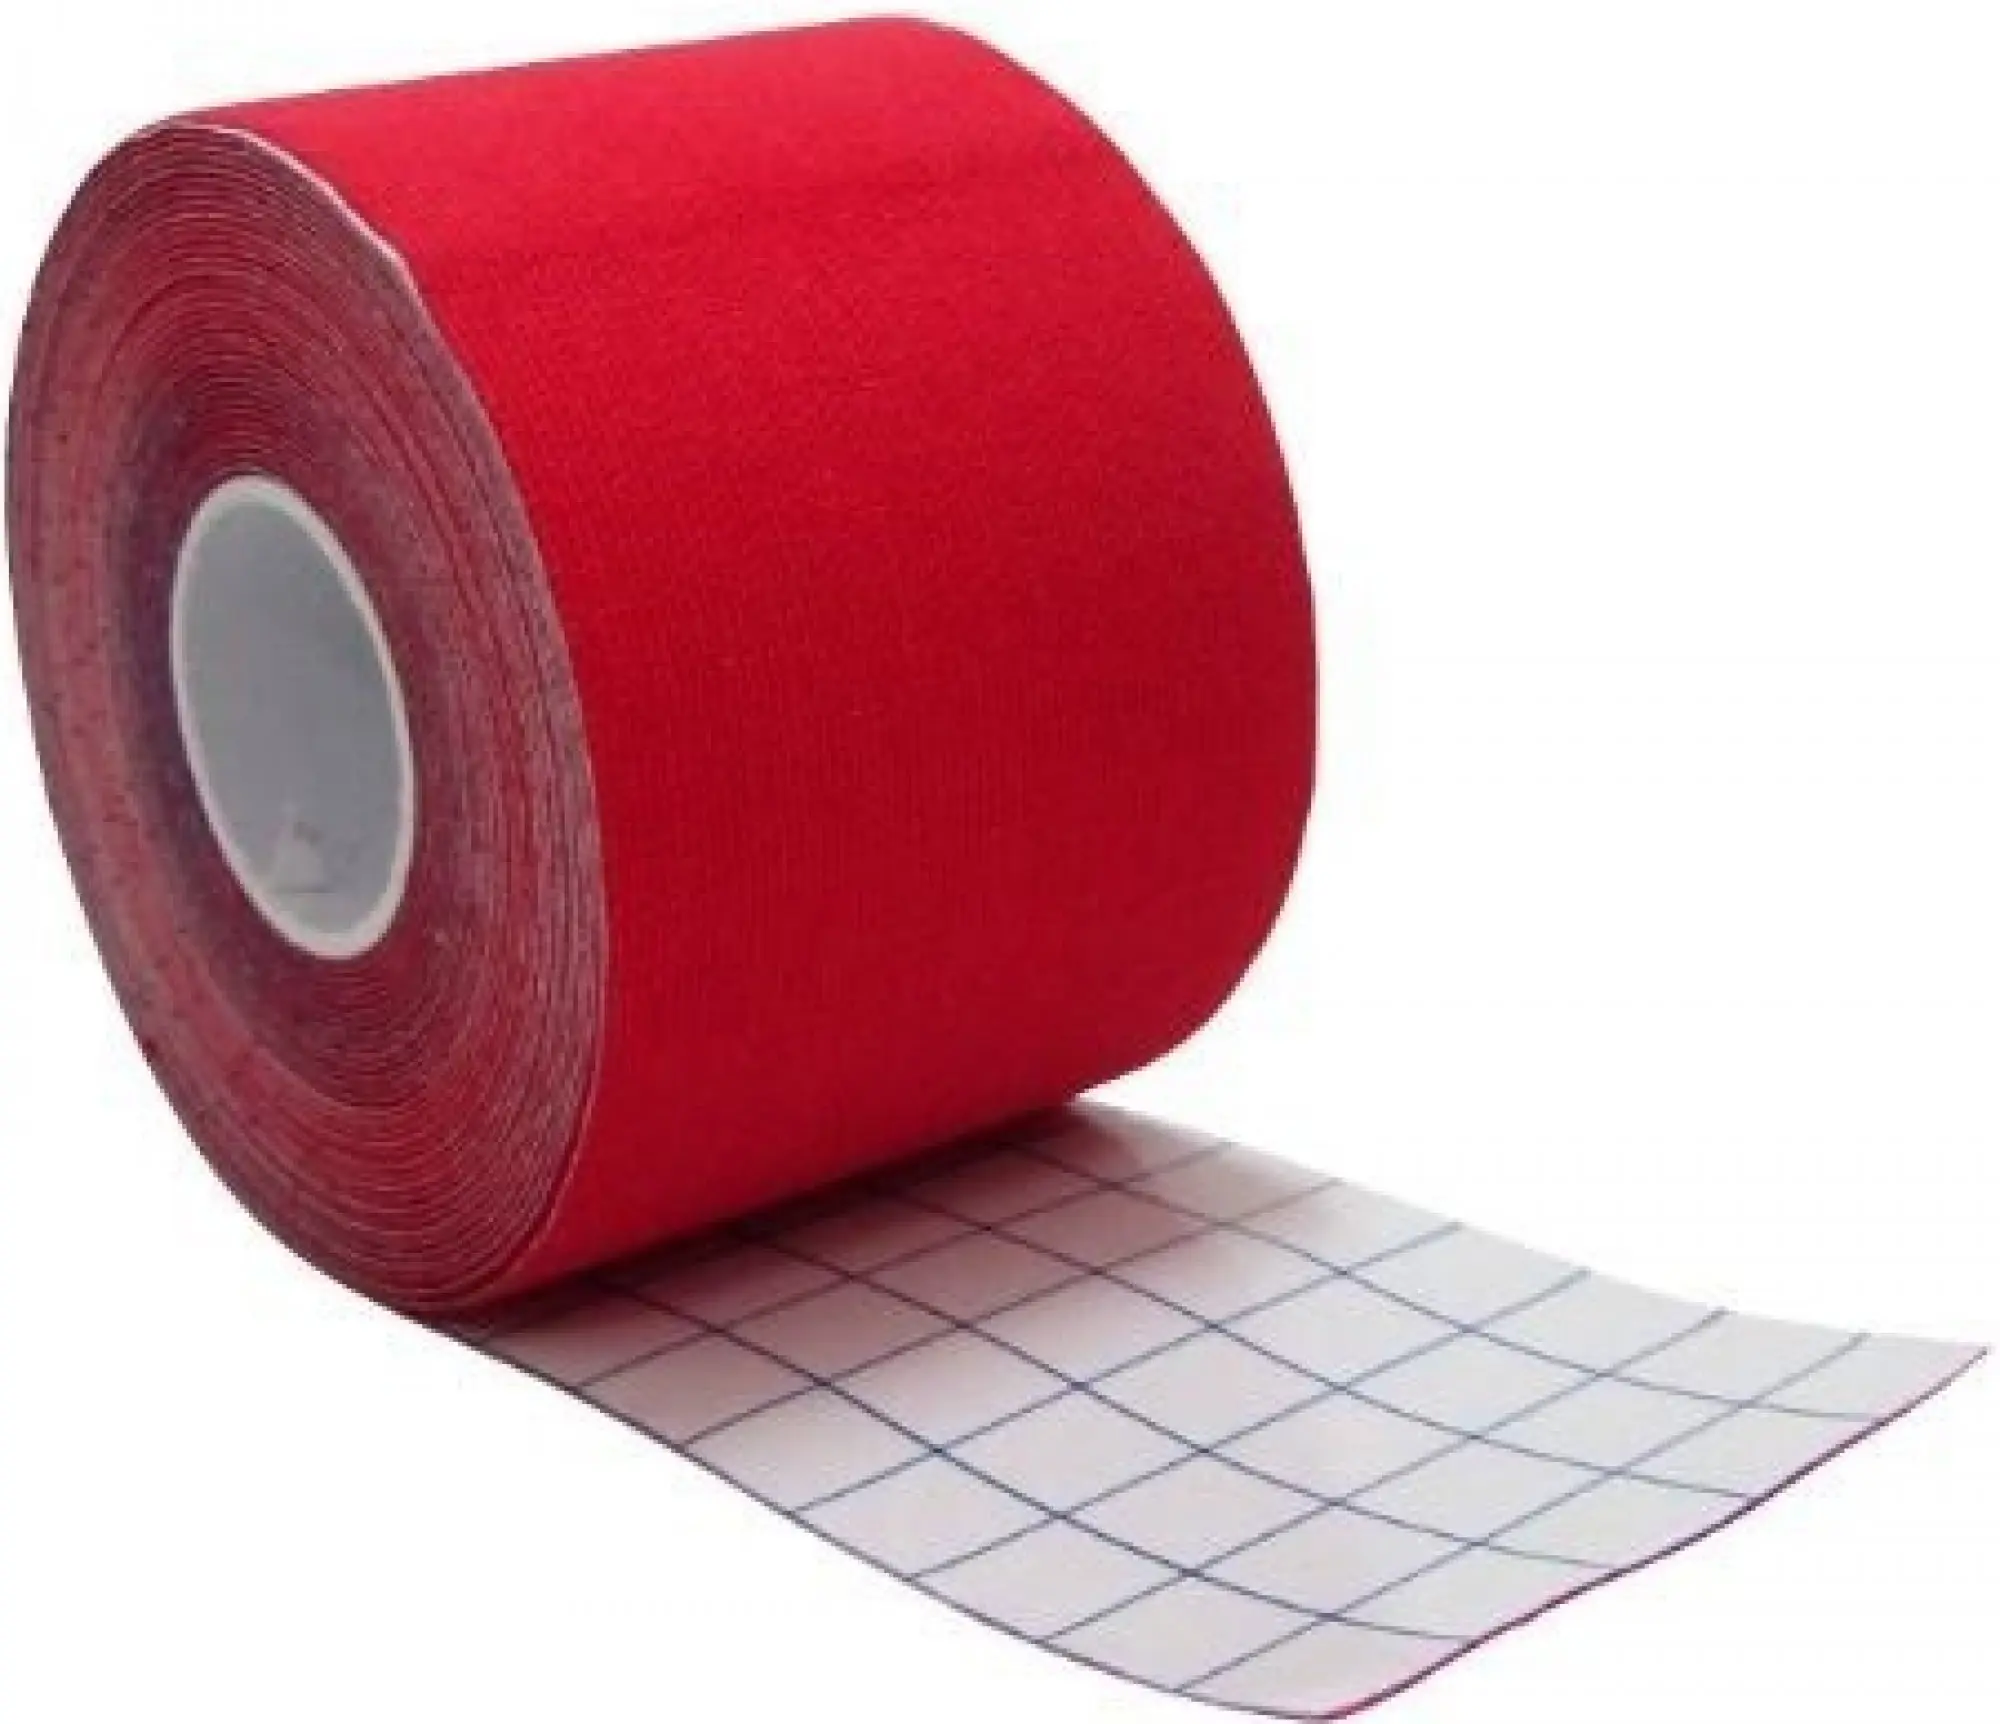 Trixline Tape červená 5cm x 5m